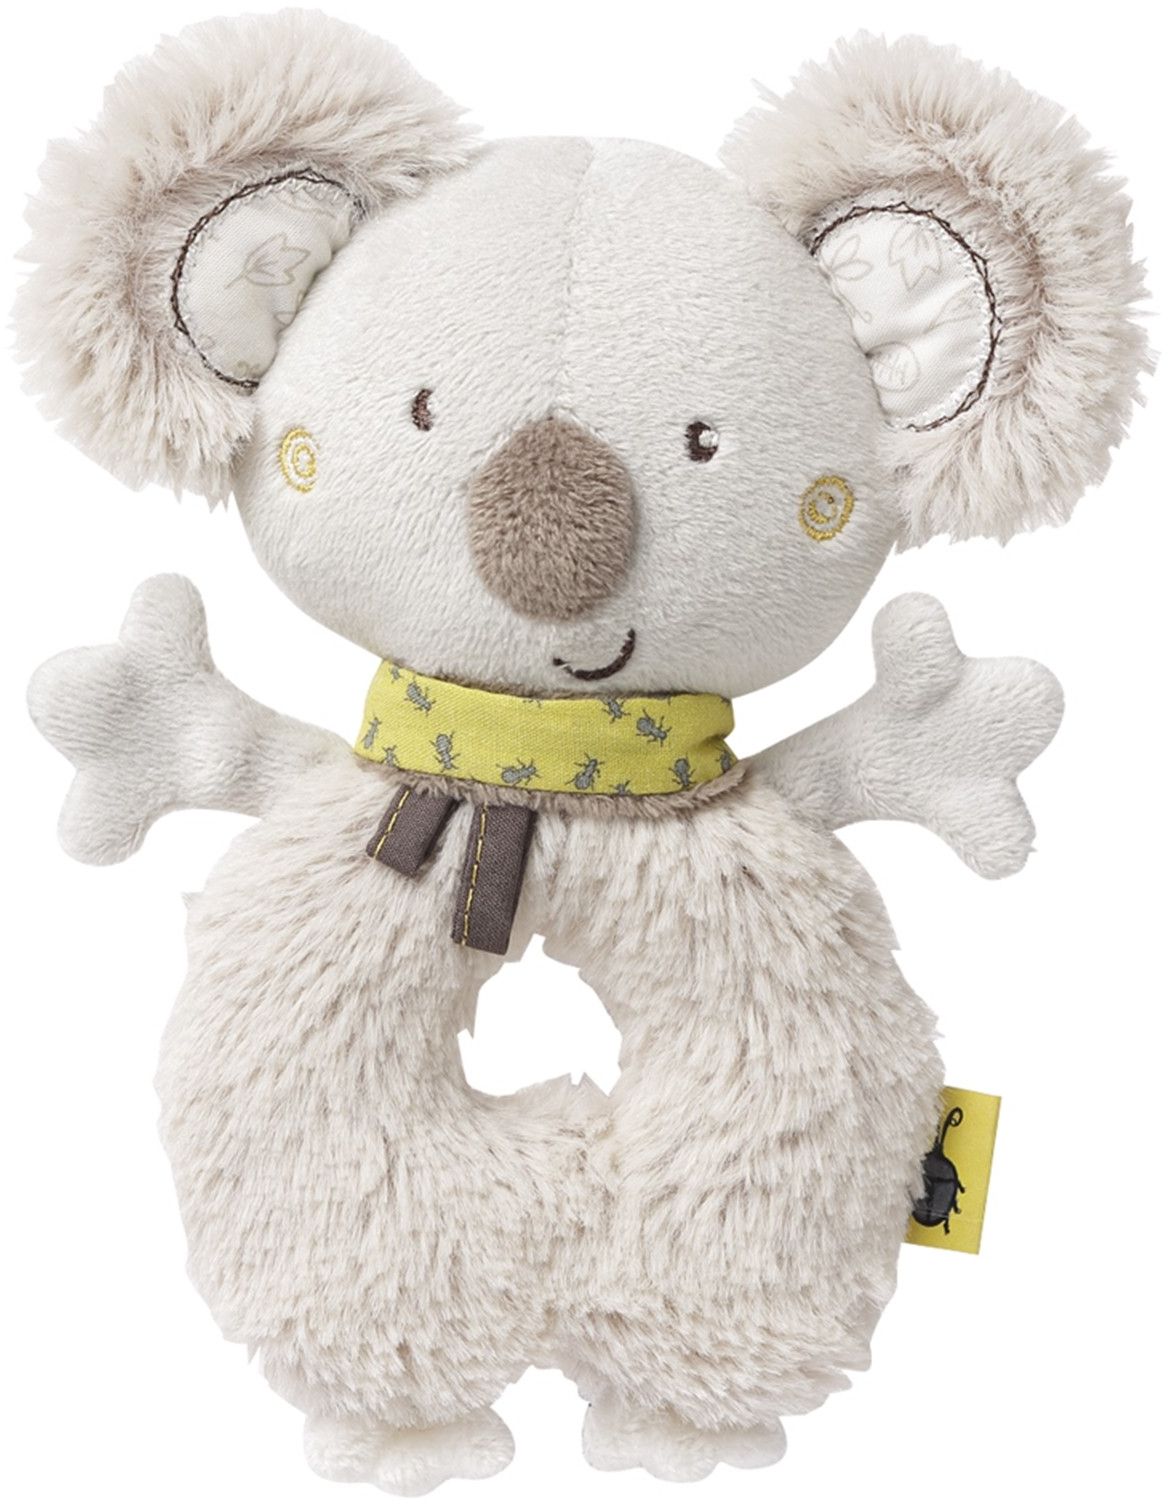 Zabawki dla niemowlaka - Uniwersalny zestaw Koala od Fehn i książeczka interaktywna Australia